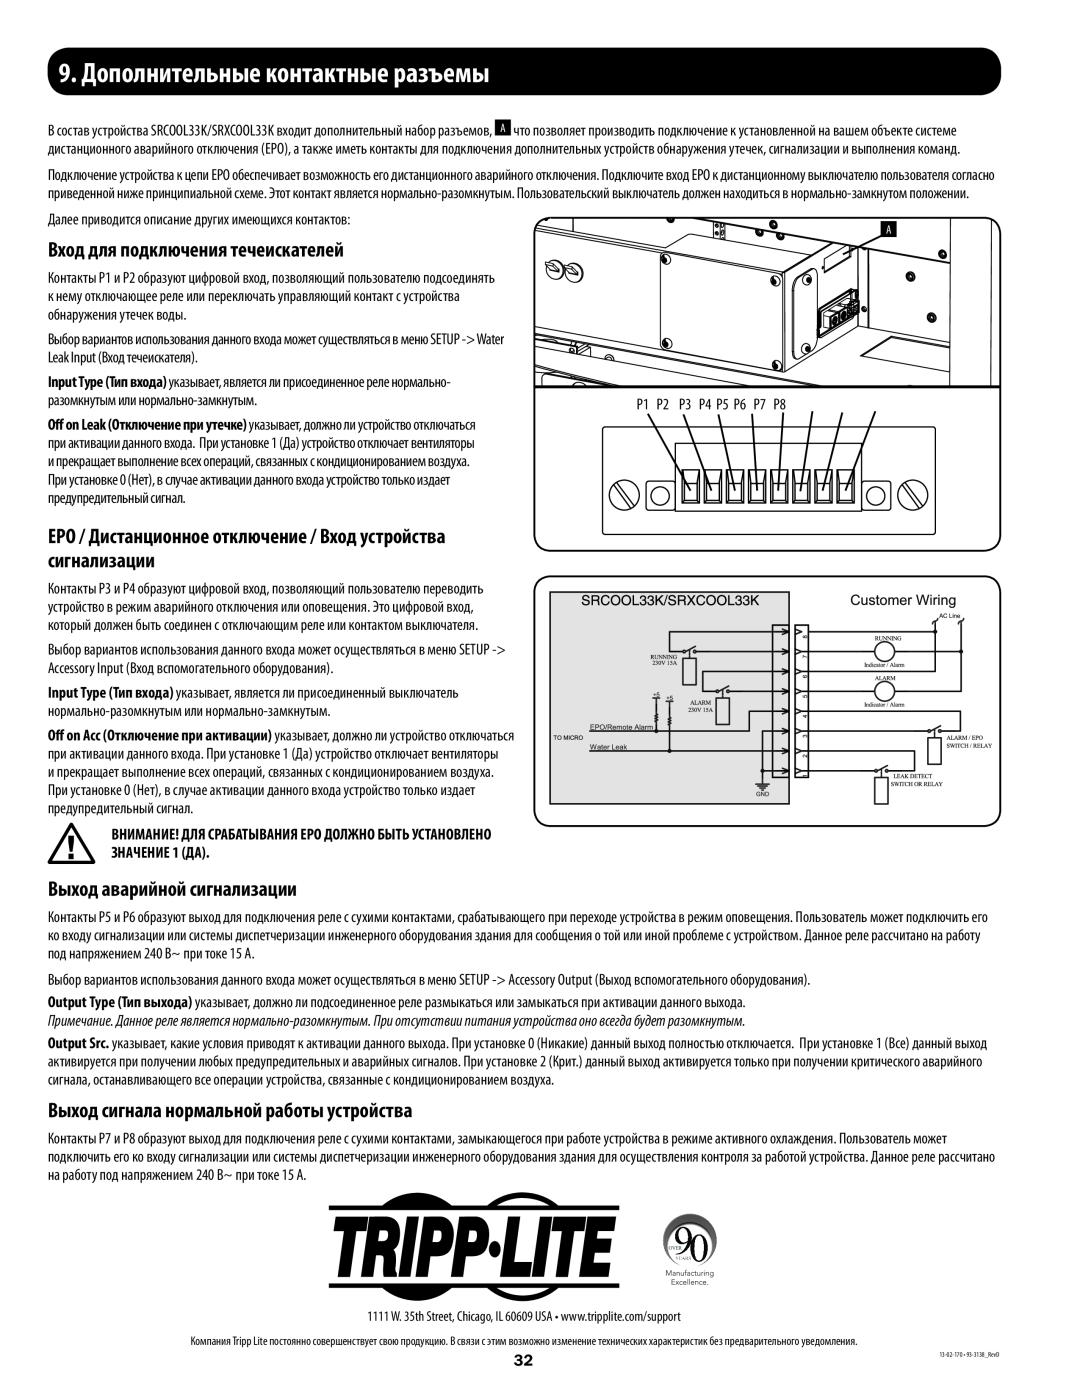 Tripp Lite SRXCOOL33K, SRCOOL33K installation manual 9.Дополнительные контактные разъемы, Вход для подключения течеискателей 